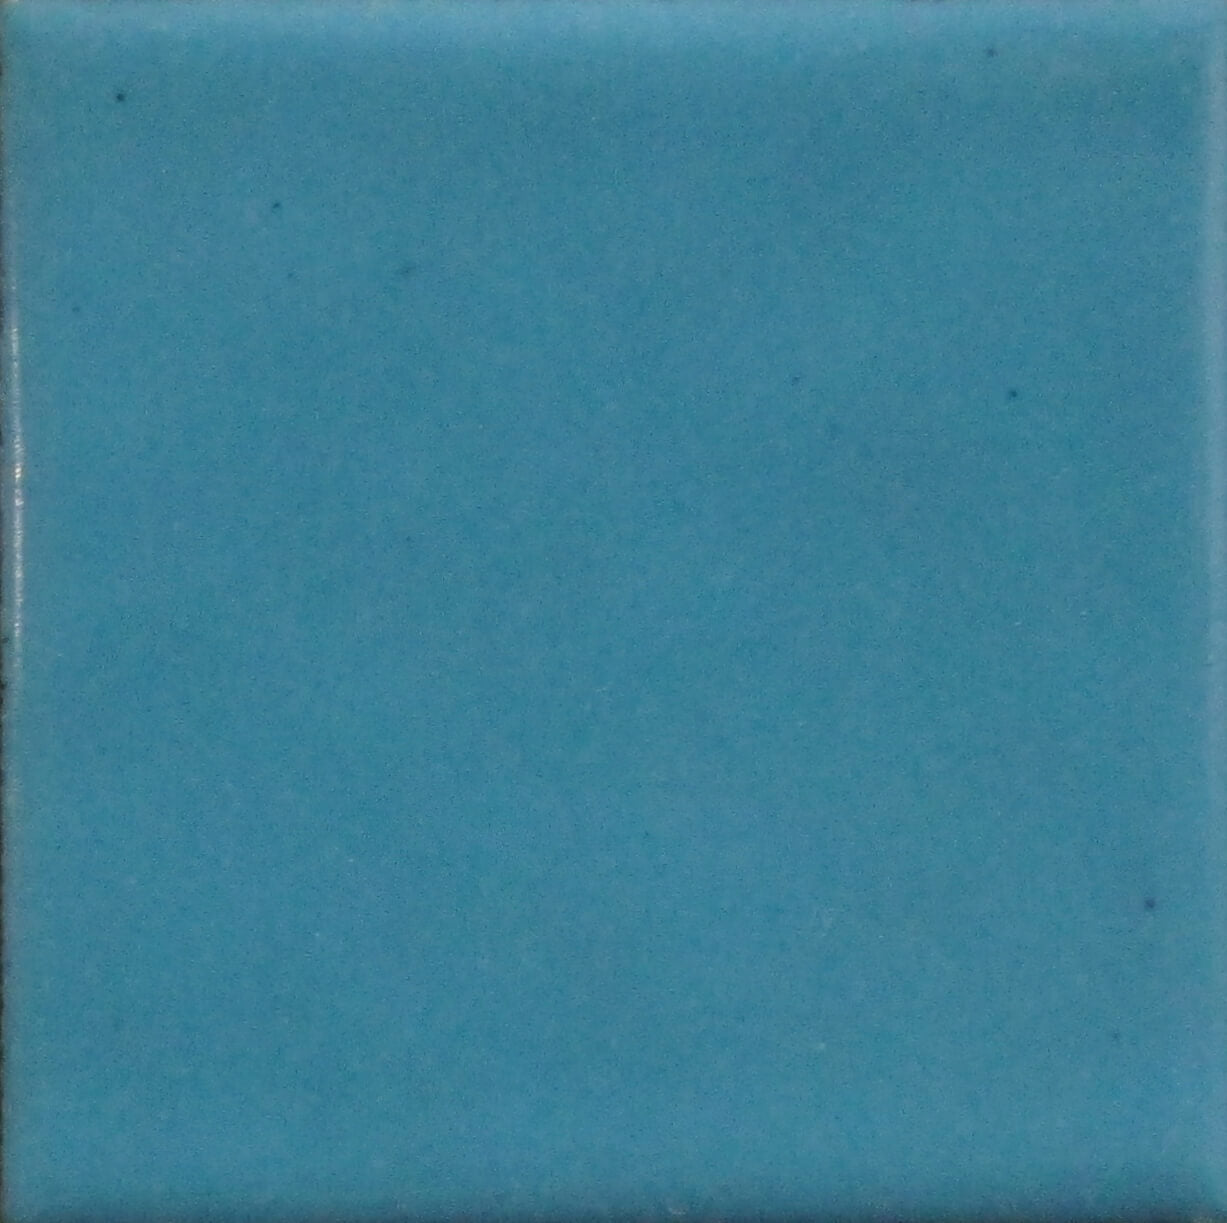 1525 Aqua Blue (A)- 1 oz